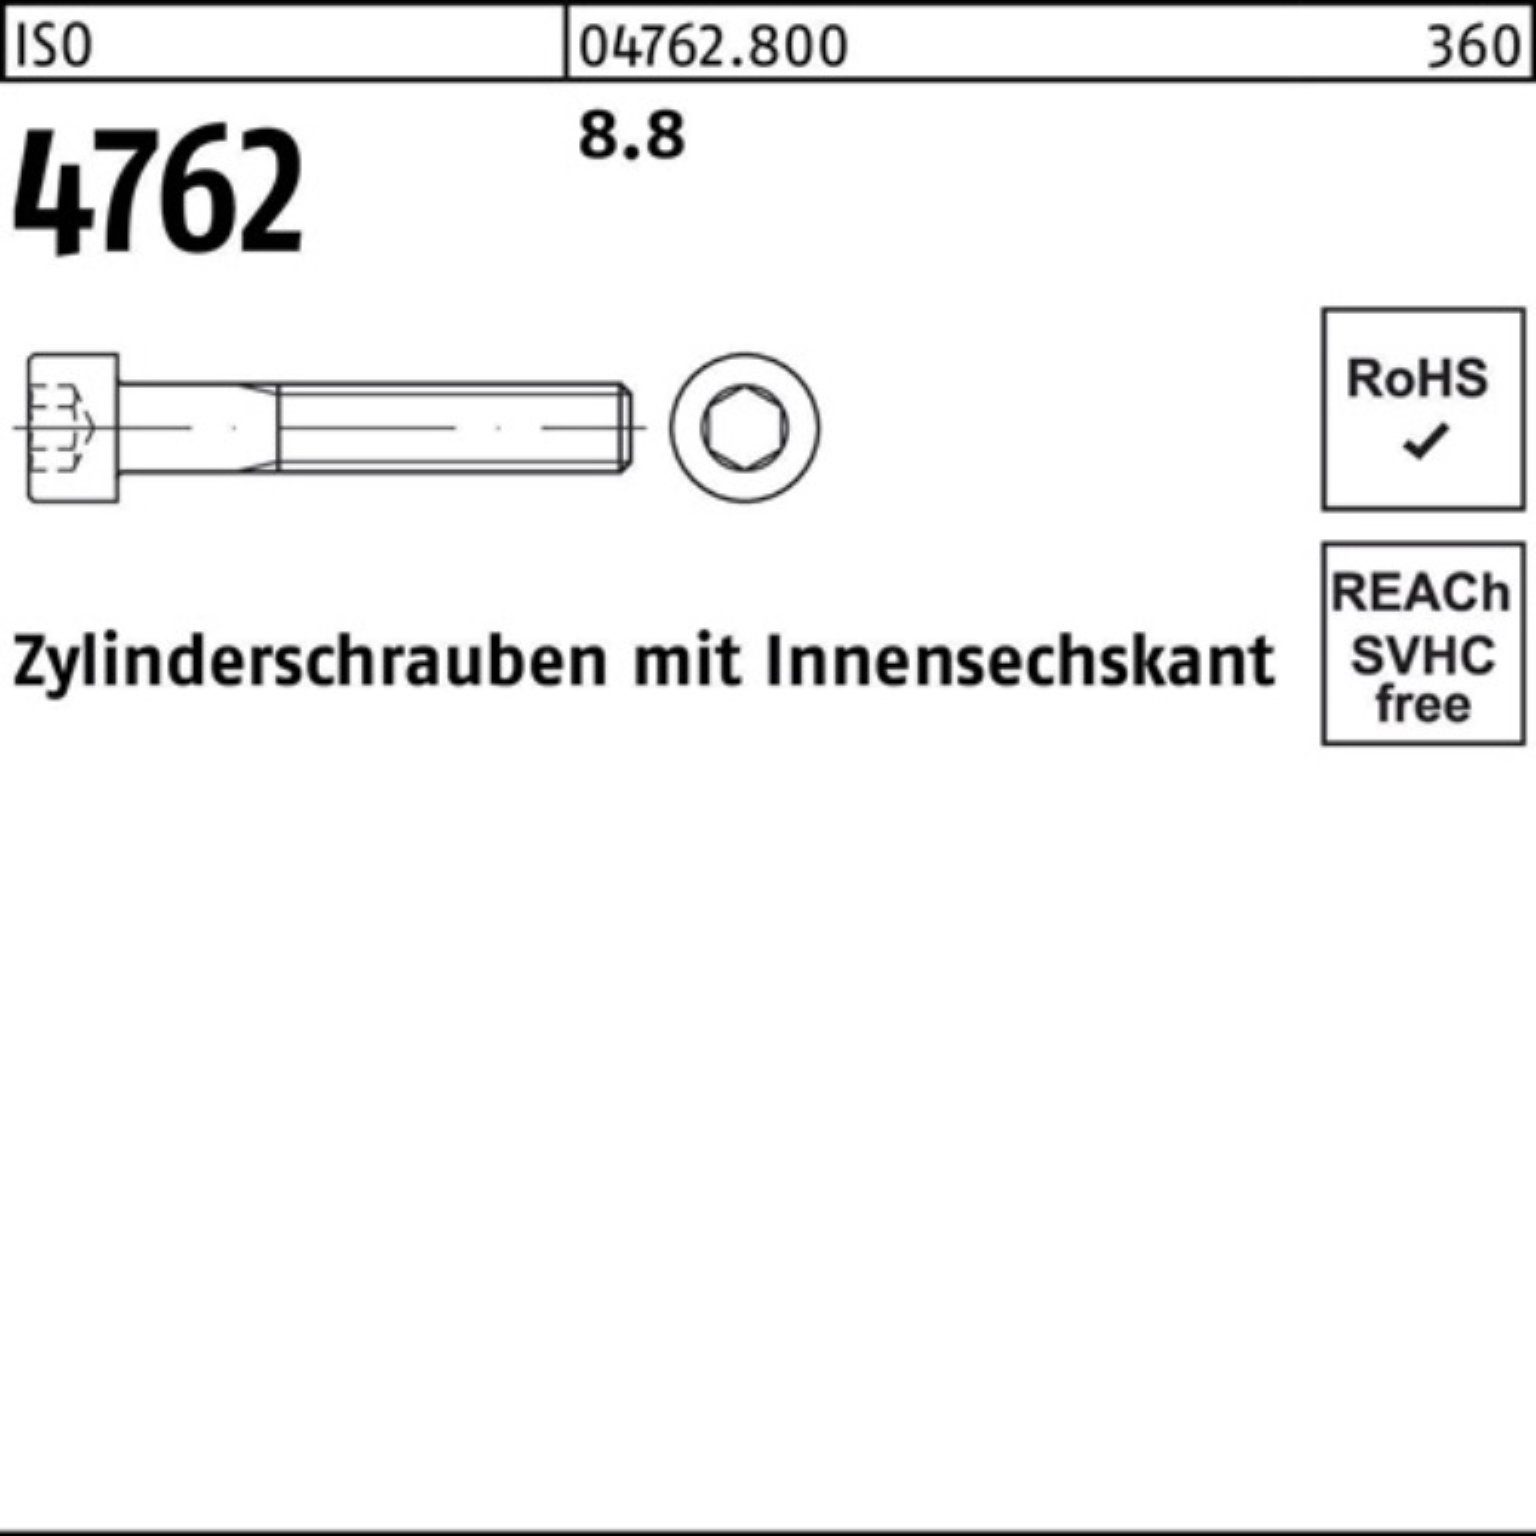 Zylinderschraube I 4762 10 500 Pack Innen-6kt 500er Reyher 8.8 M4x Stück Zylinderschraube ISO